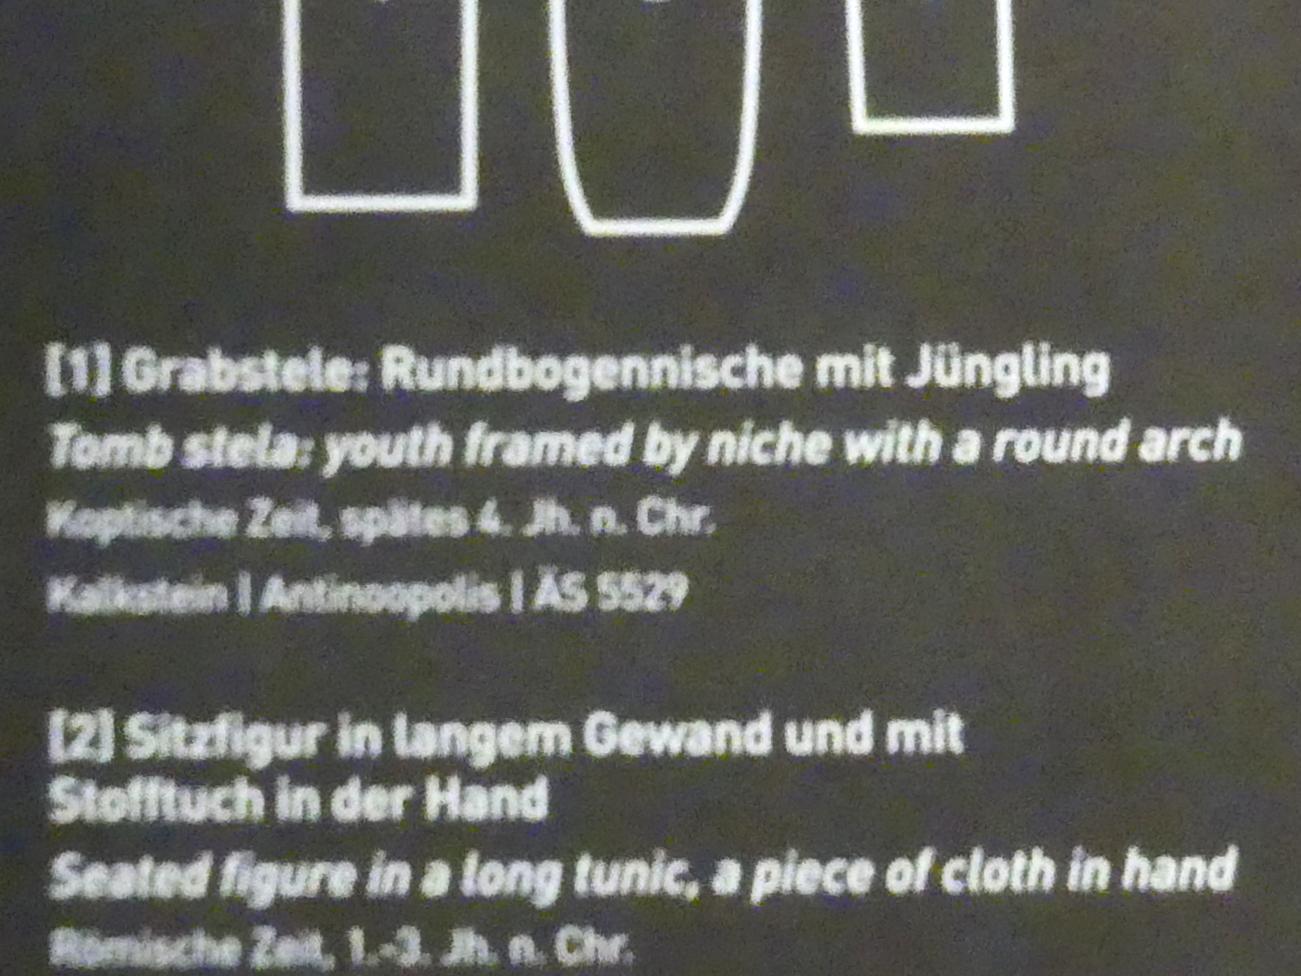 Grabstele: Rundbogennische mit Jüngling, Koptische Zeit, 200 - 800, 360 - 400, Bild 2/2